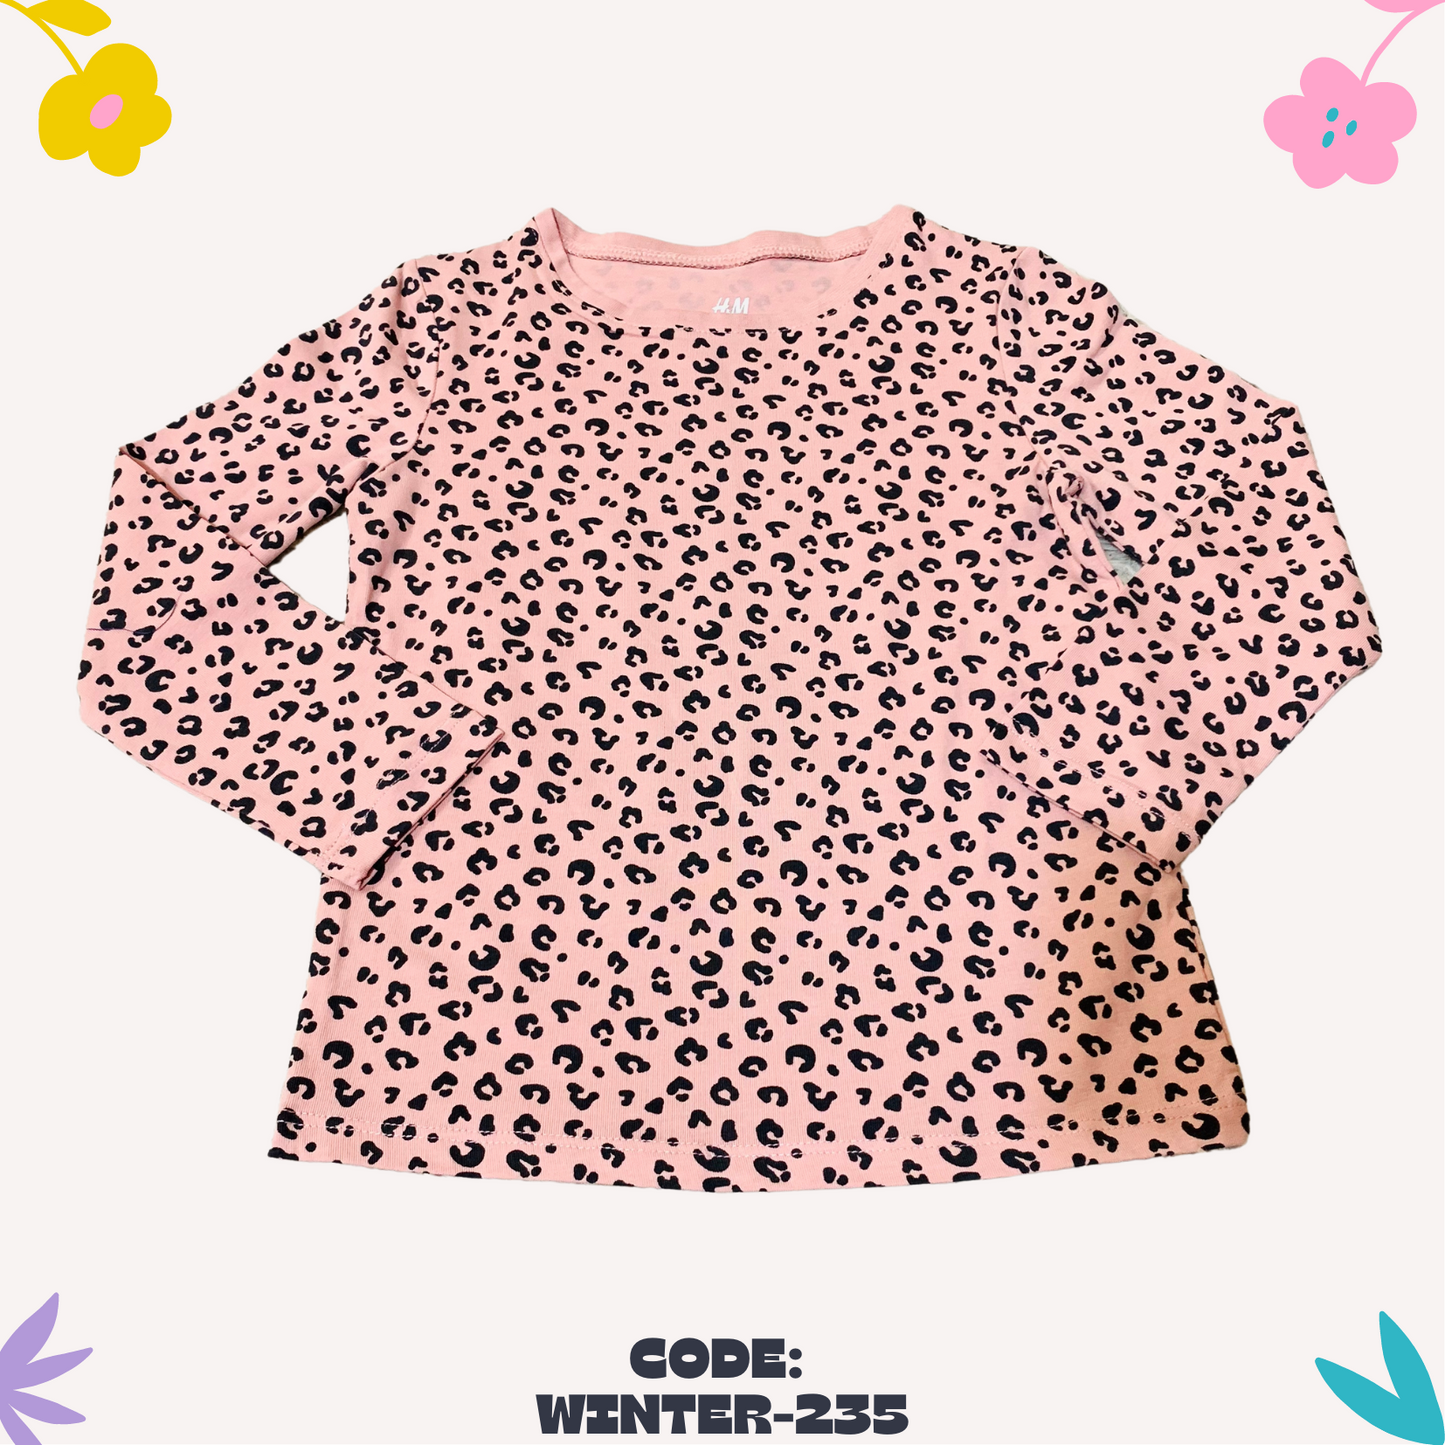 Peach Cheetah printed shirt